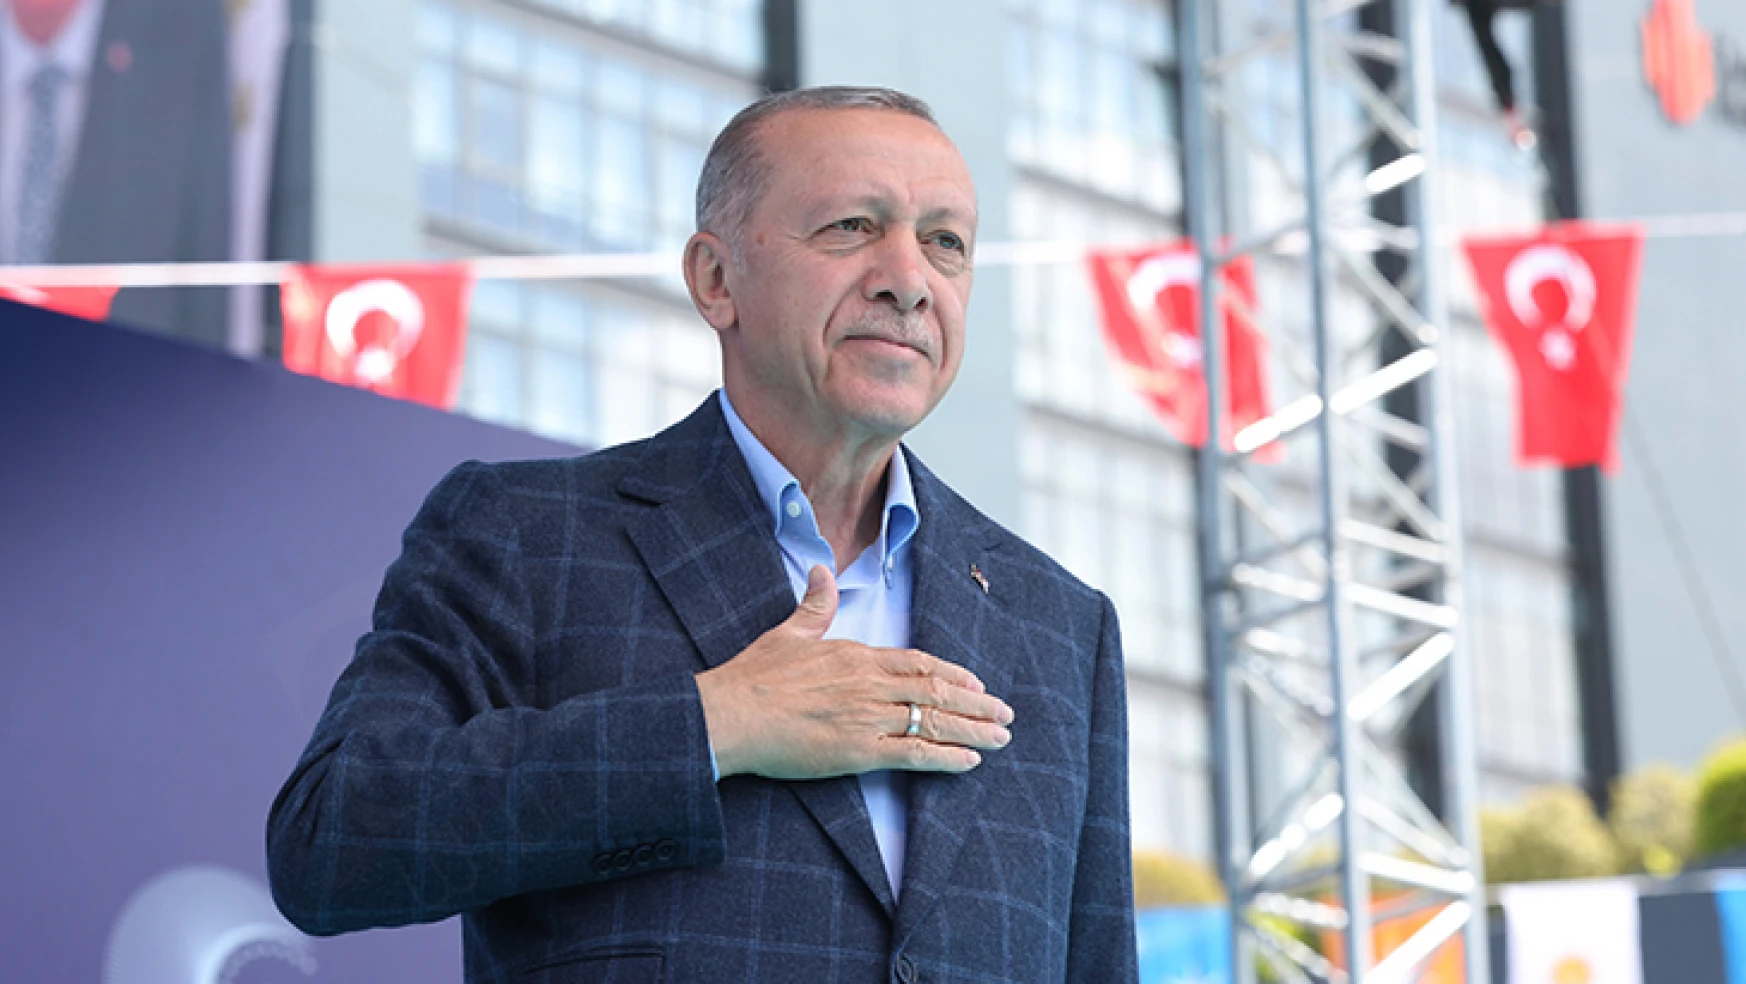 Cumhurbaşkanı Erdoğan'dan ilk açıklama